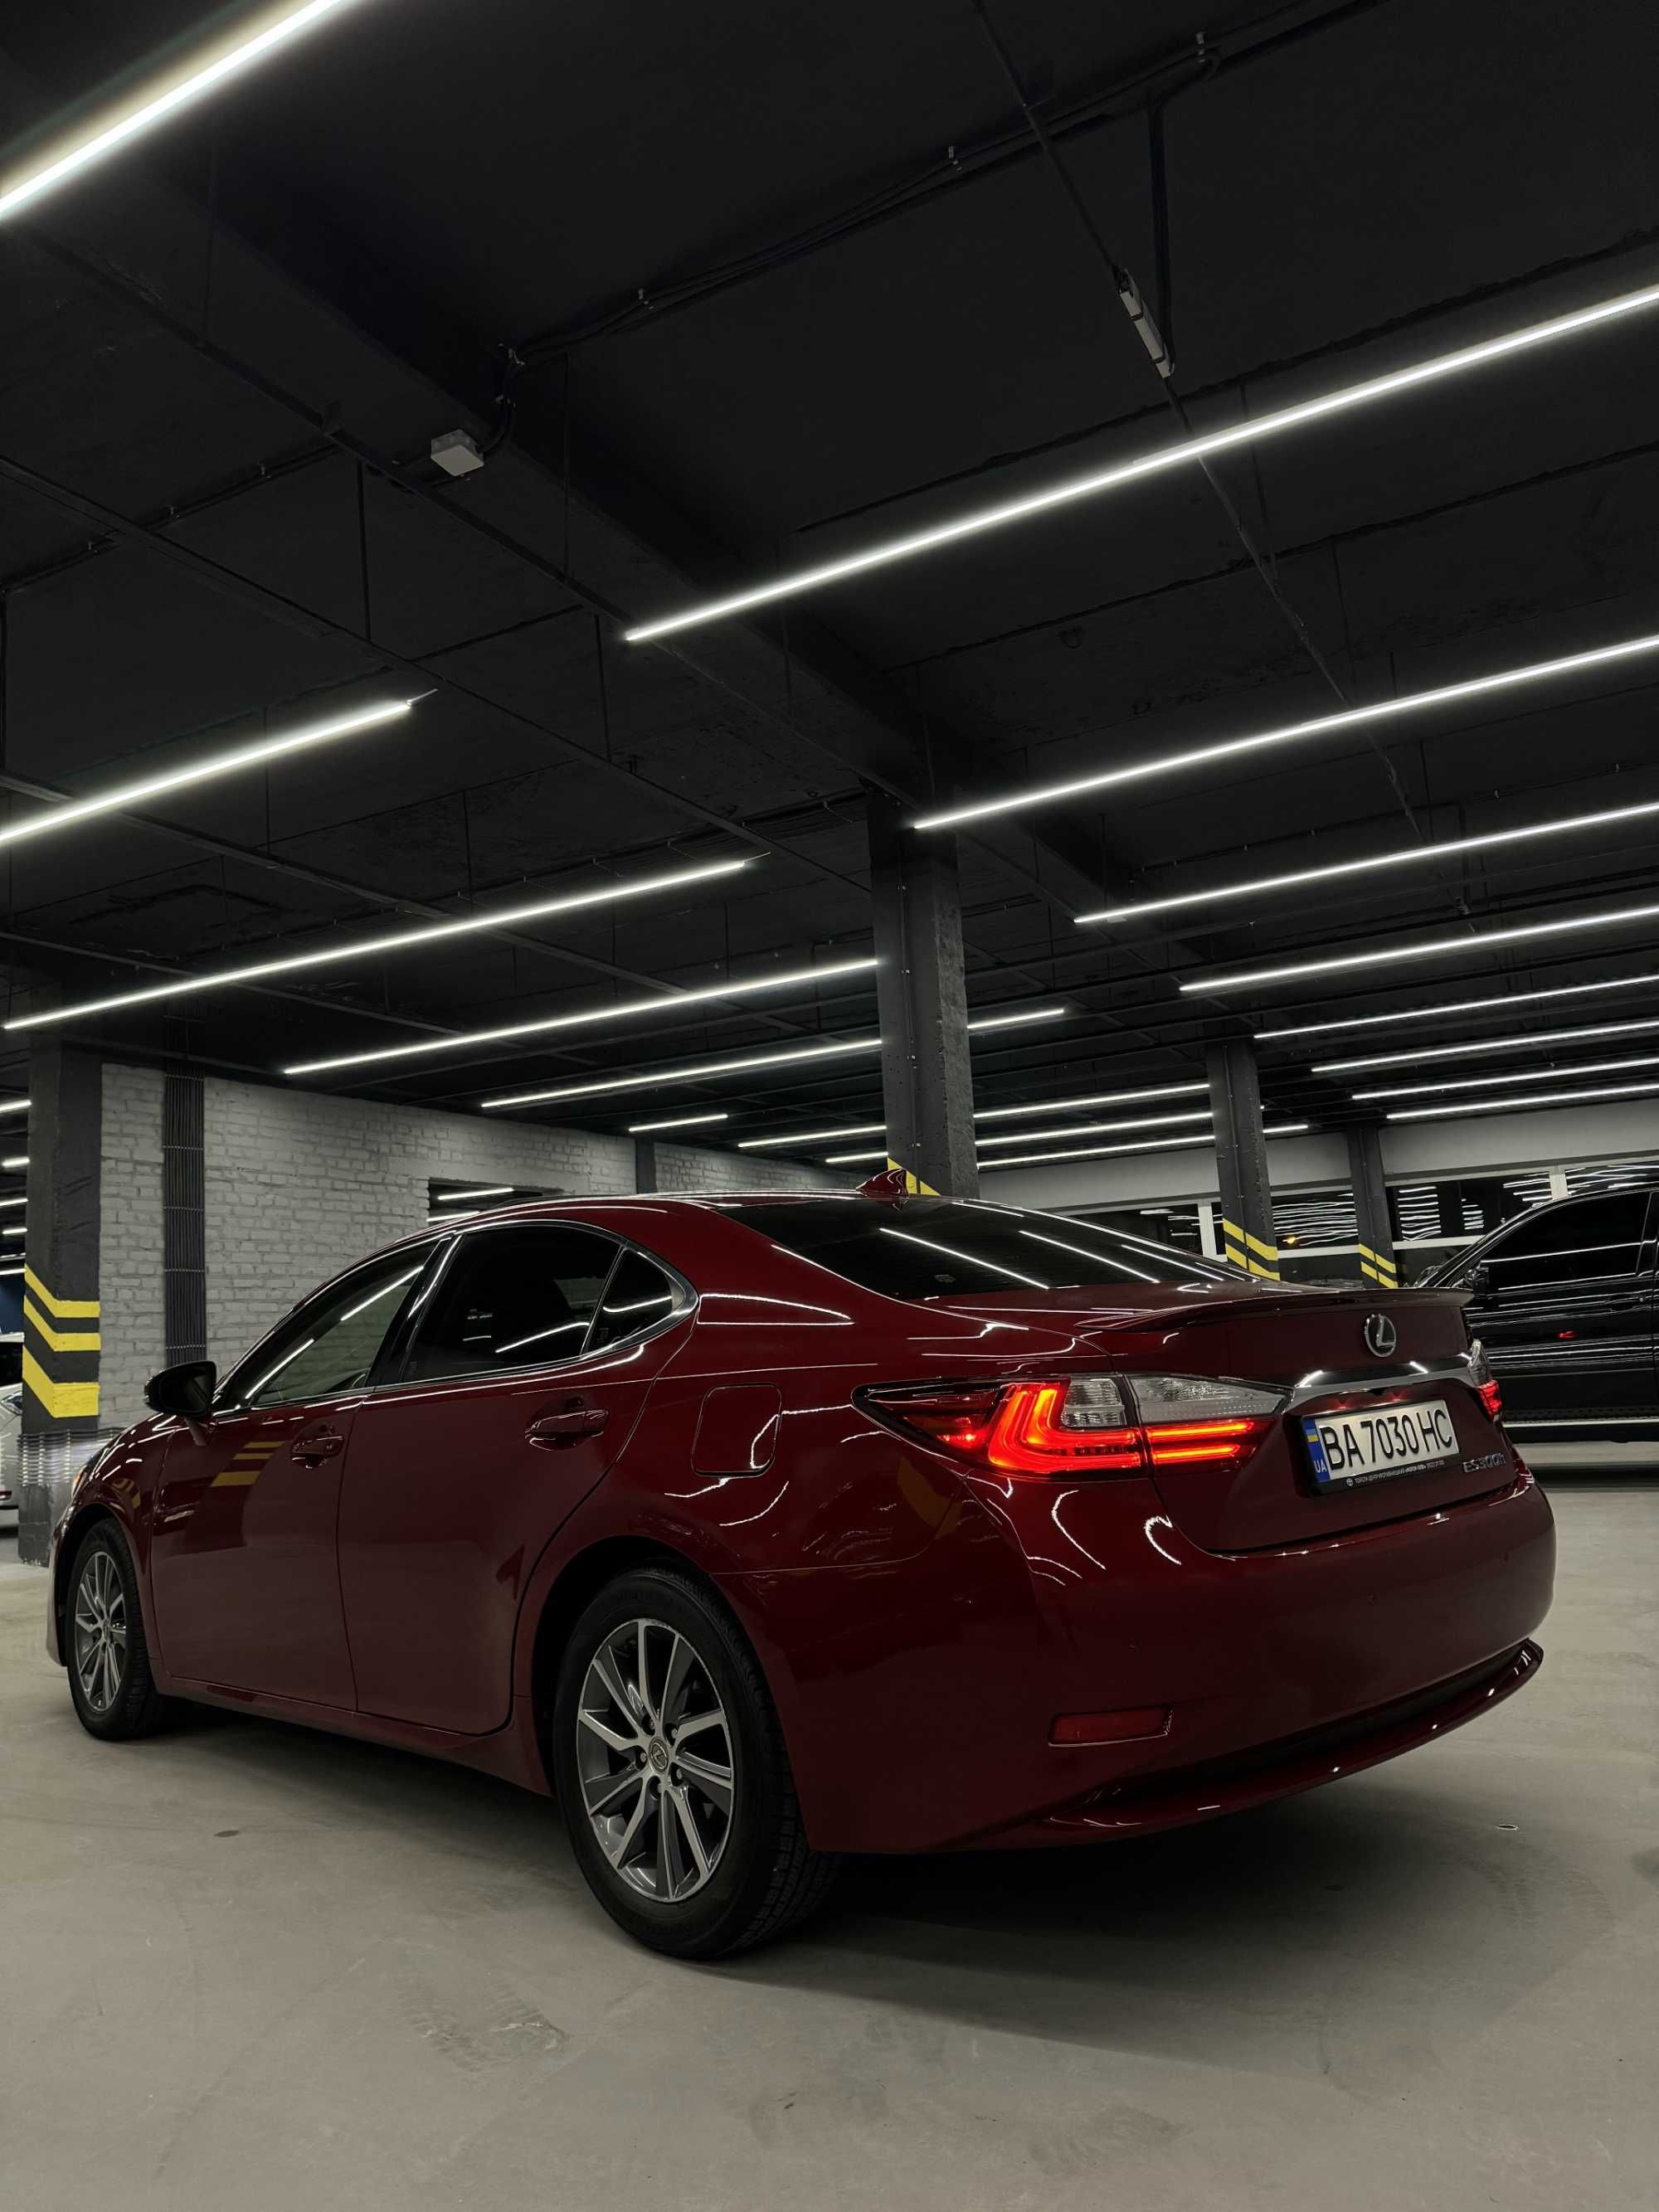 Продам авто Lexus ES 2015 р., 2.5 л - Гібрид, Автомат, 300h (204 к.с.)